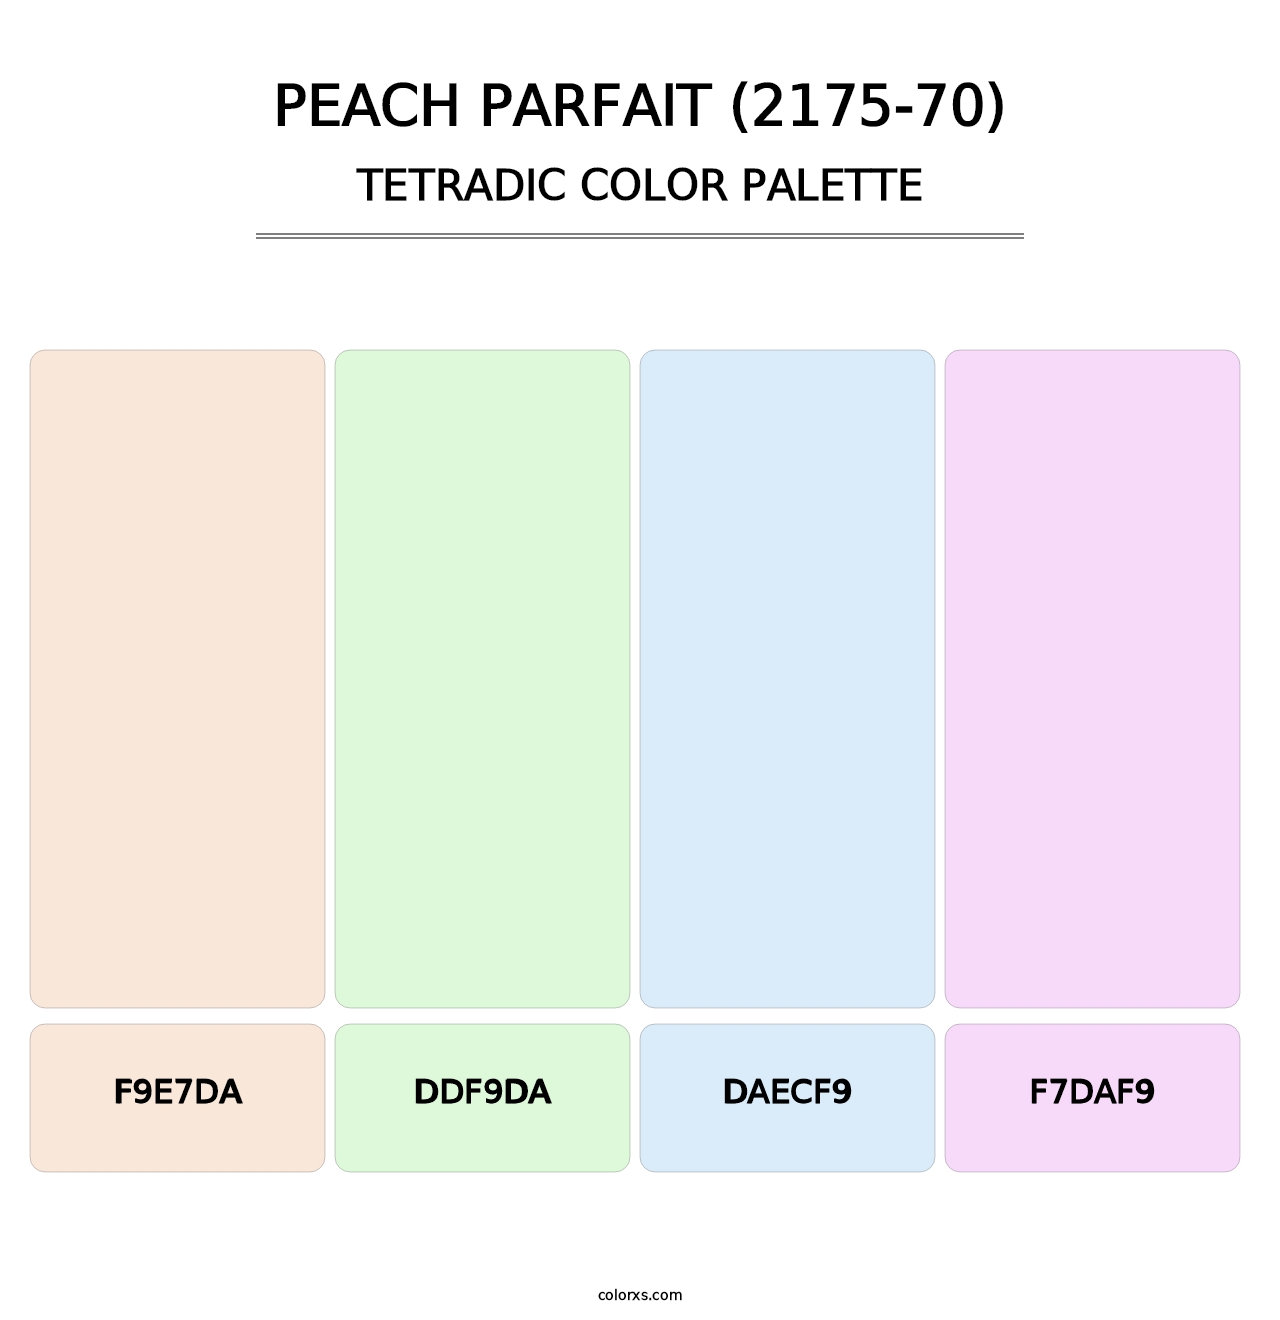 Peach Parfait (2175-70) - Tetradic Color Palette